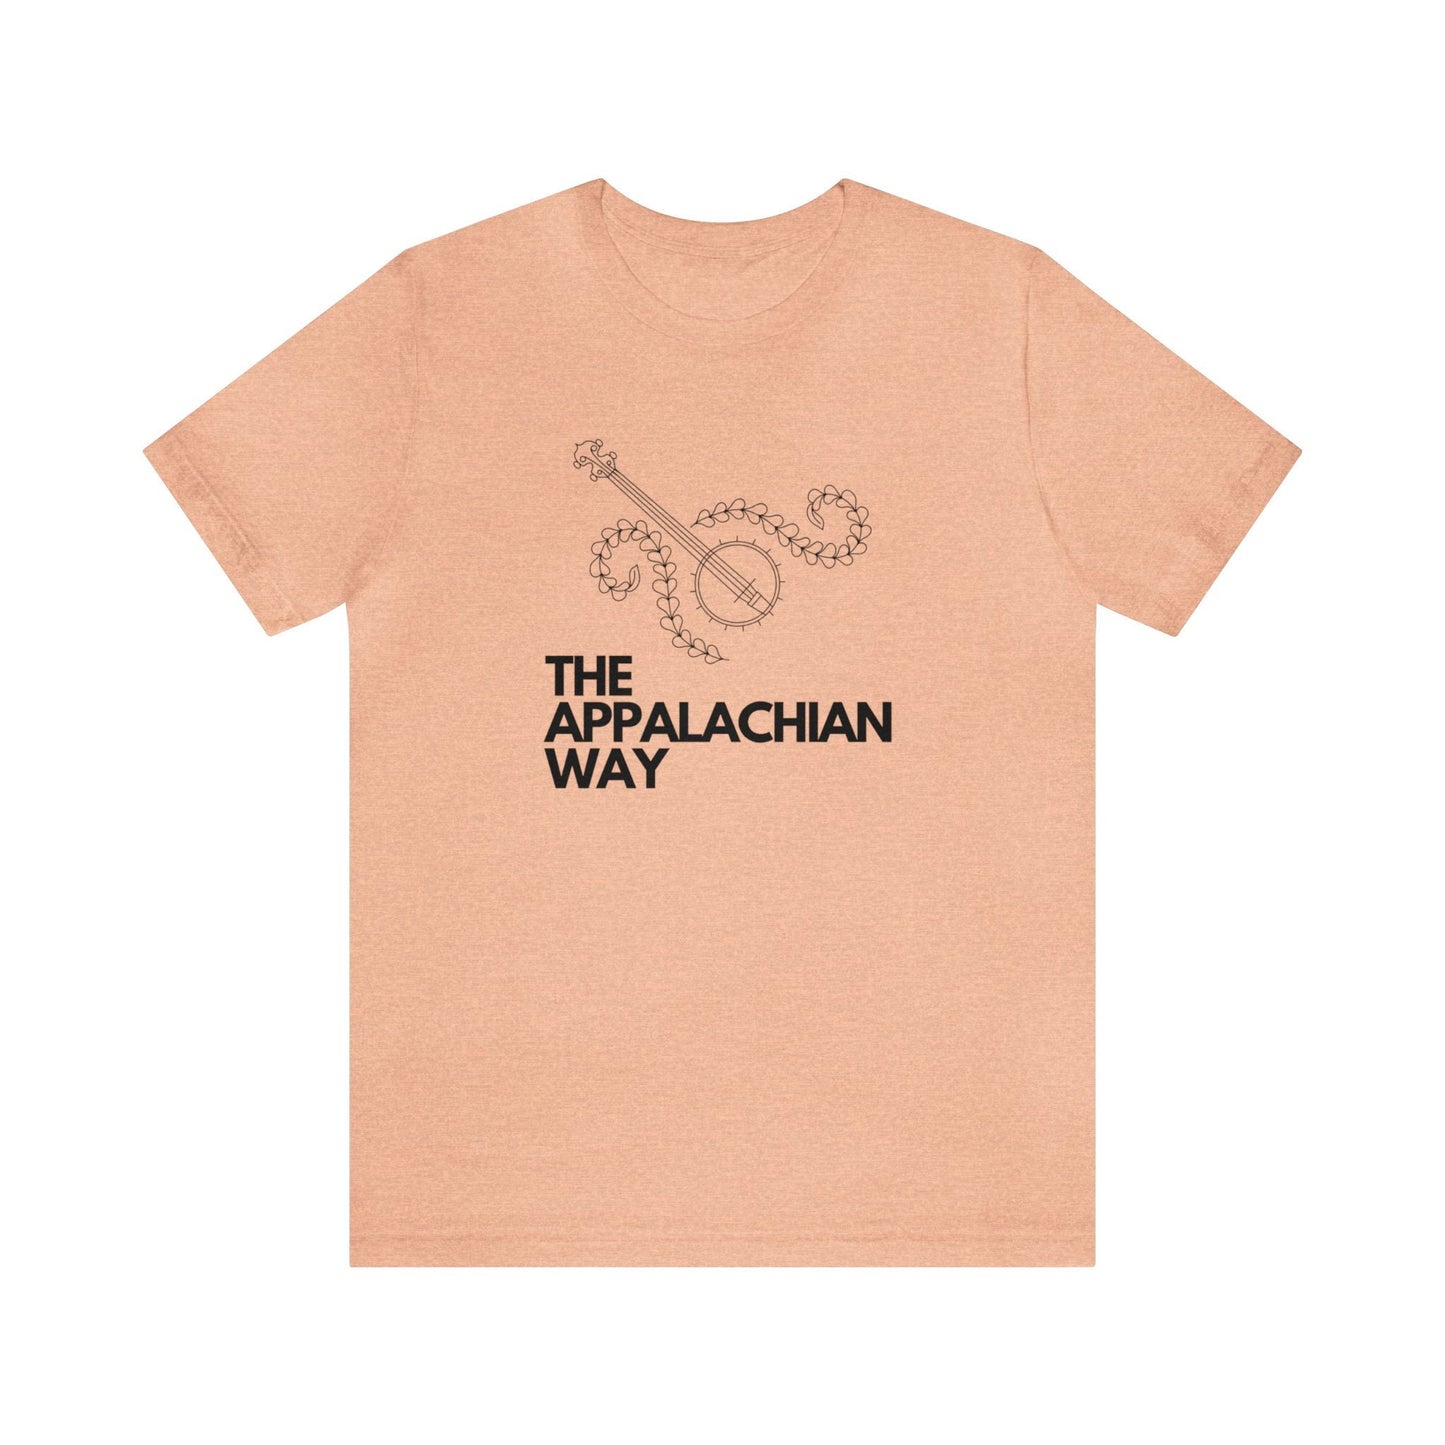 The Appalachian Way Banjo T-shirt